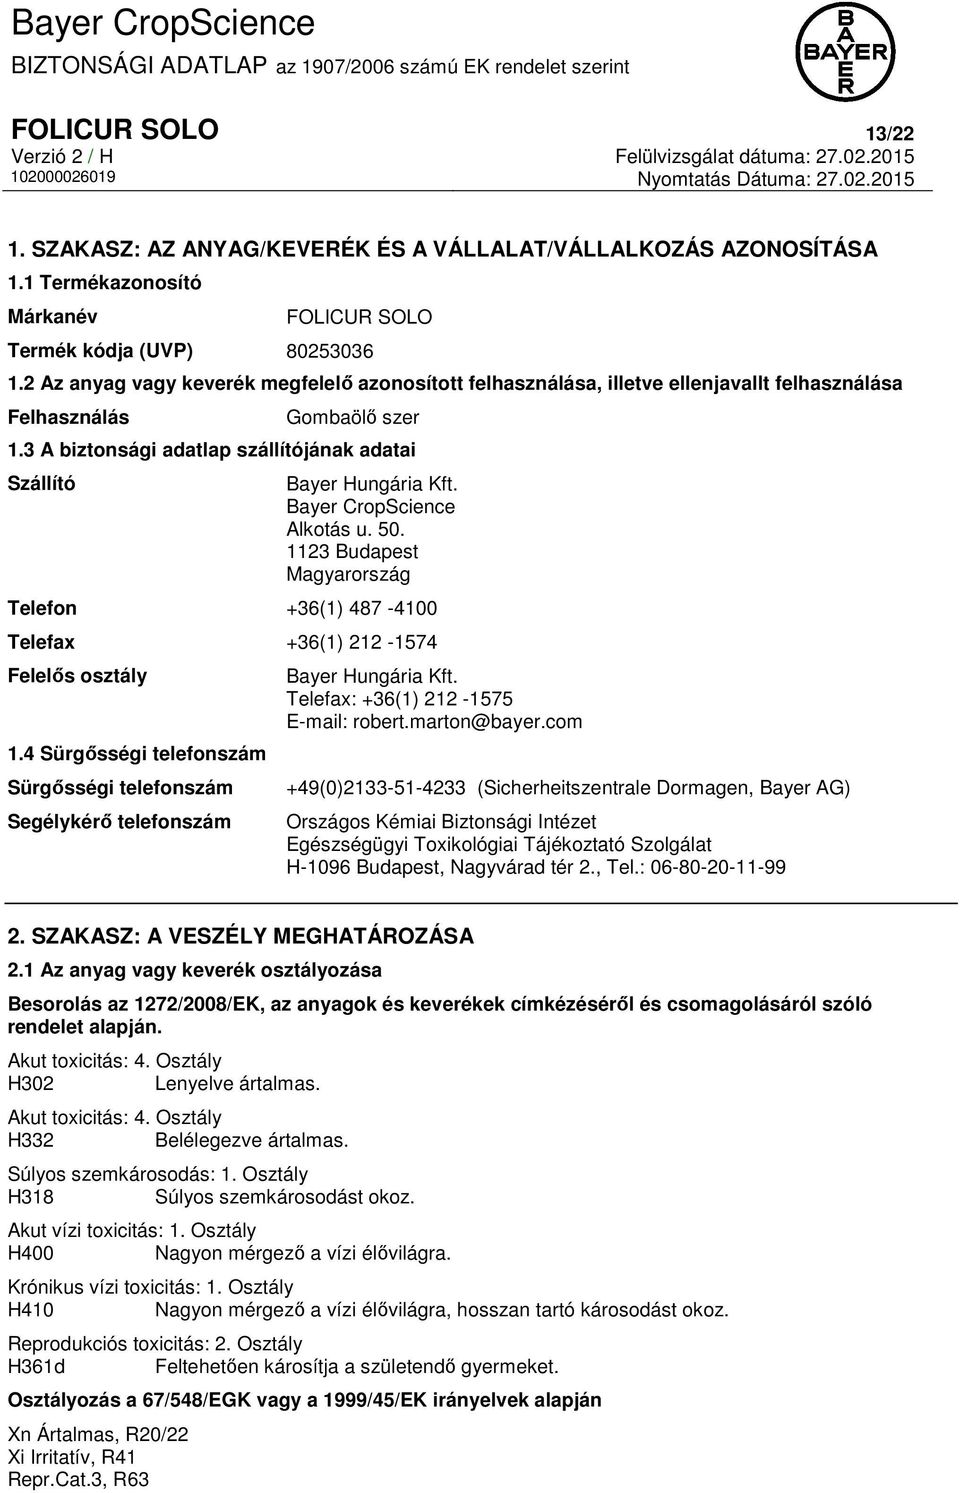 3 A biztonsági adatlap szállítójának adatai Szállító Bayer Hungária Kft. Bayer CropScience Alkotás u. 50. 1123 Budapest Magyarország Telefon +36(1) 487-4100 Telefax +36(1) 212-1574 Felelős osztály 1.